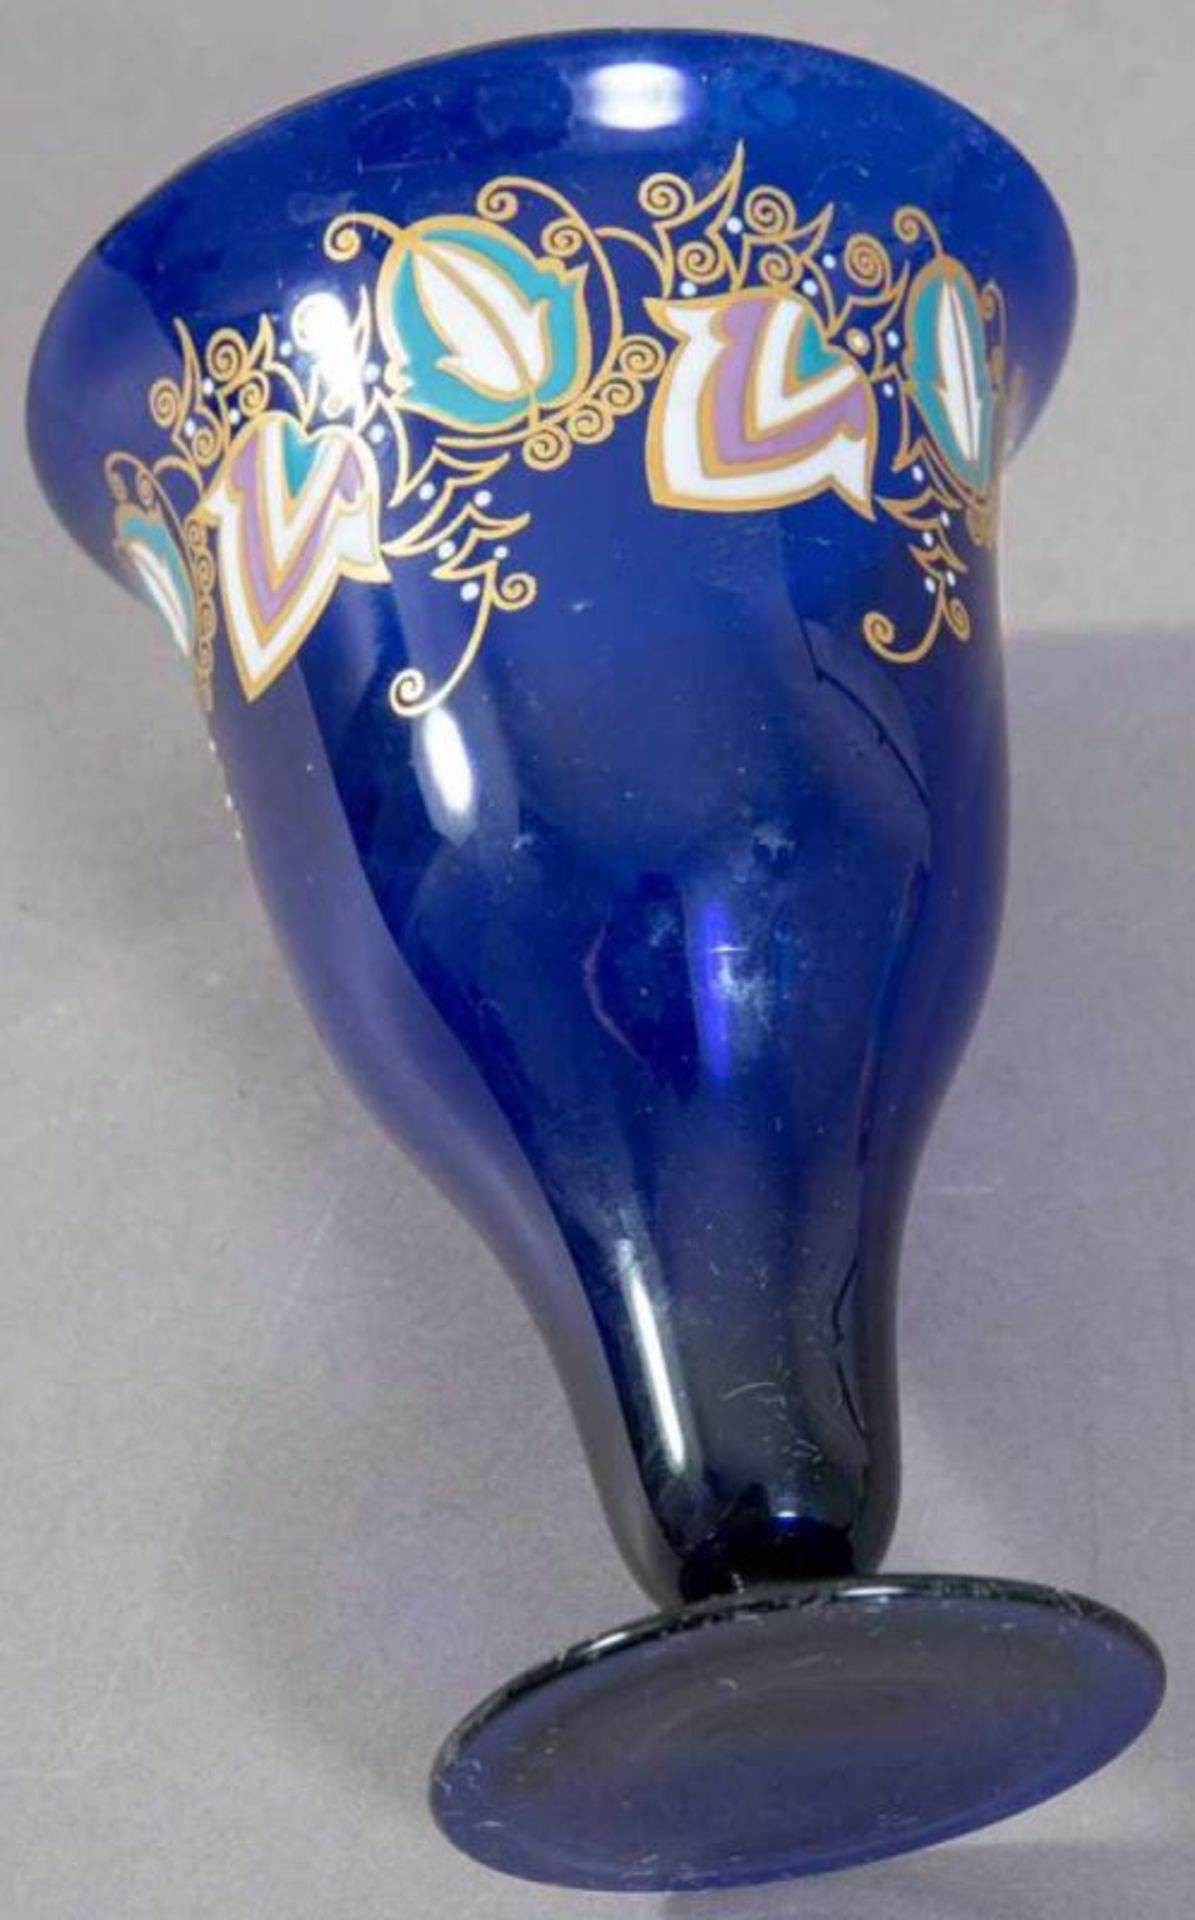 Pokalglasvase, Eichinger & Kleiber - Zwiesel, blauviolettes Glas mit polychromem Emailledekor. - Bild 3 aus 3